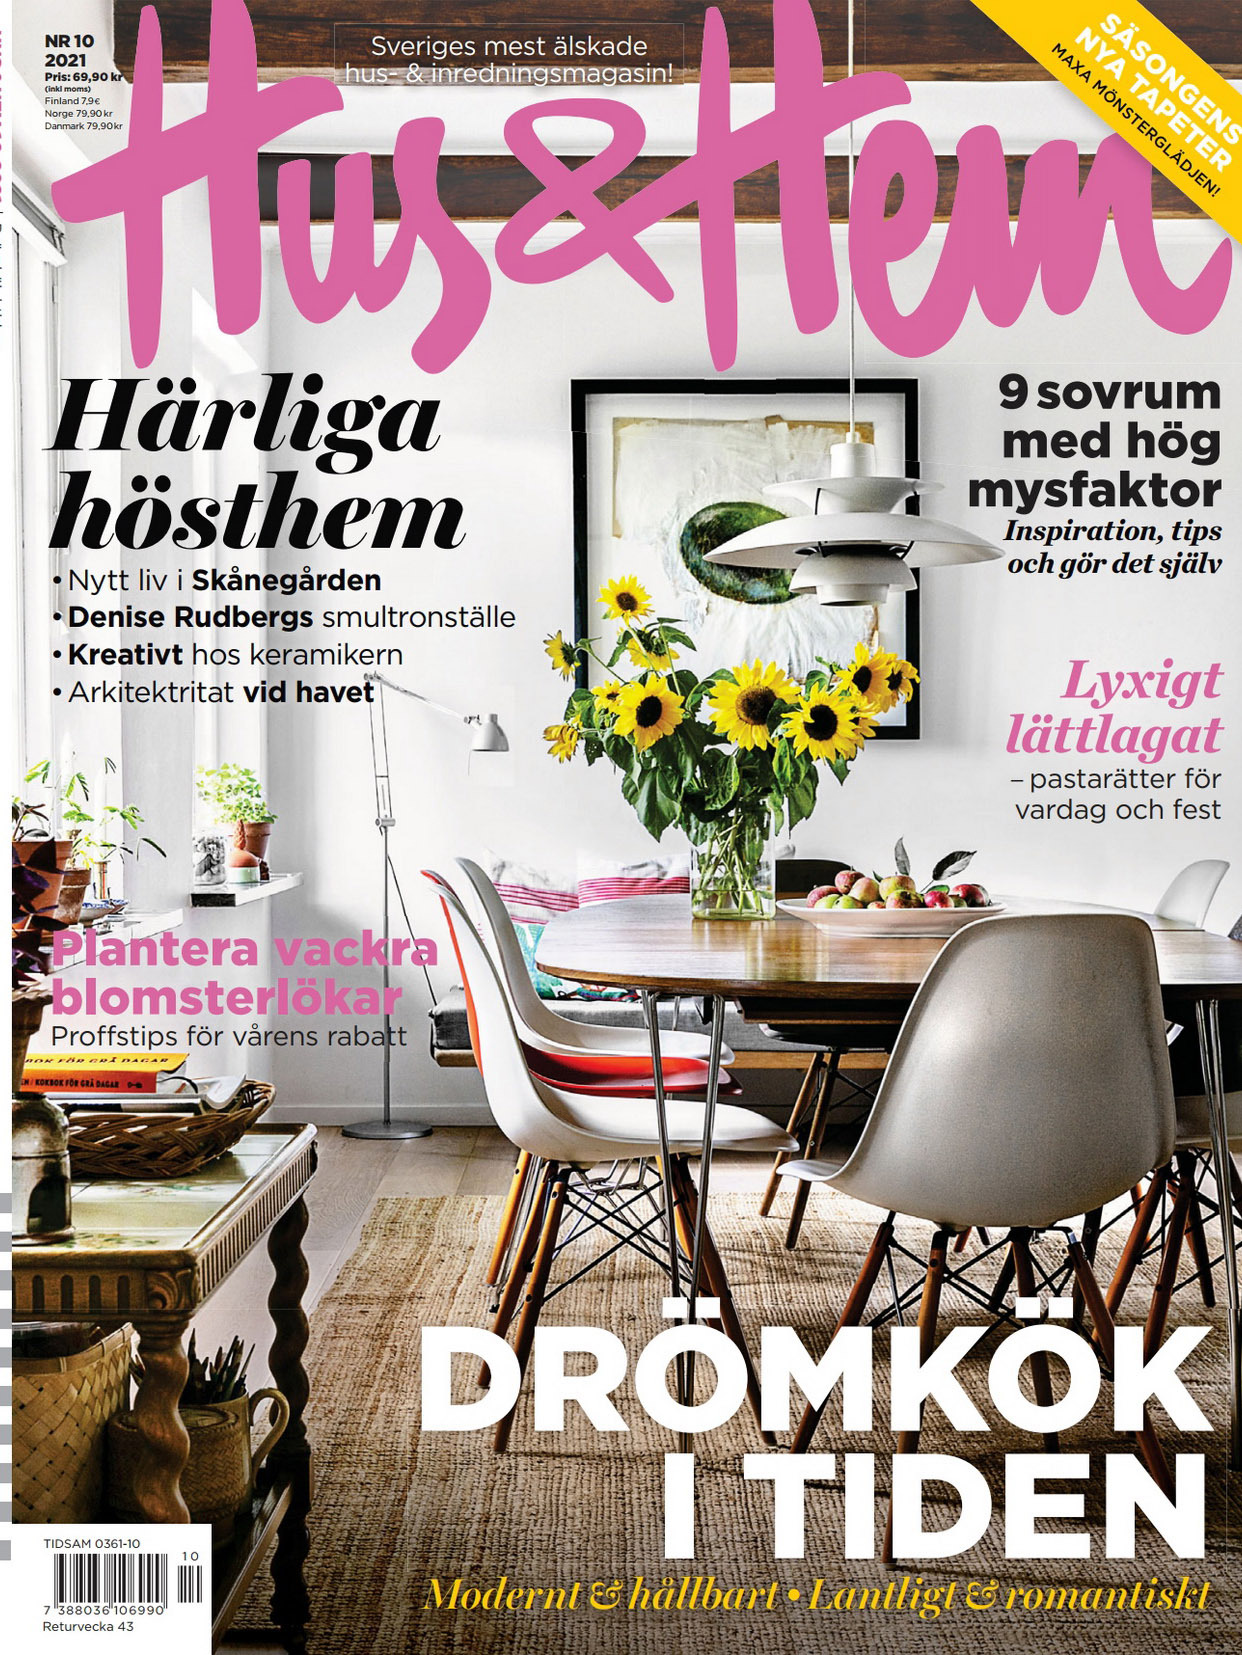 《Hus & Hem》瑞典室内设计趋势杂志2021年10月号